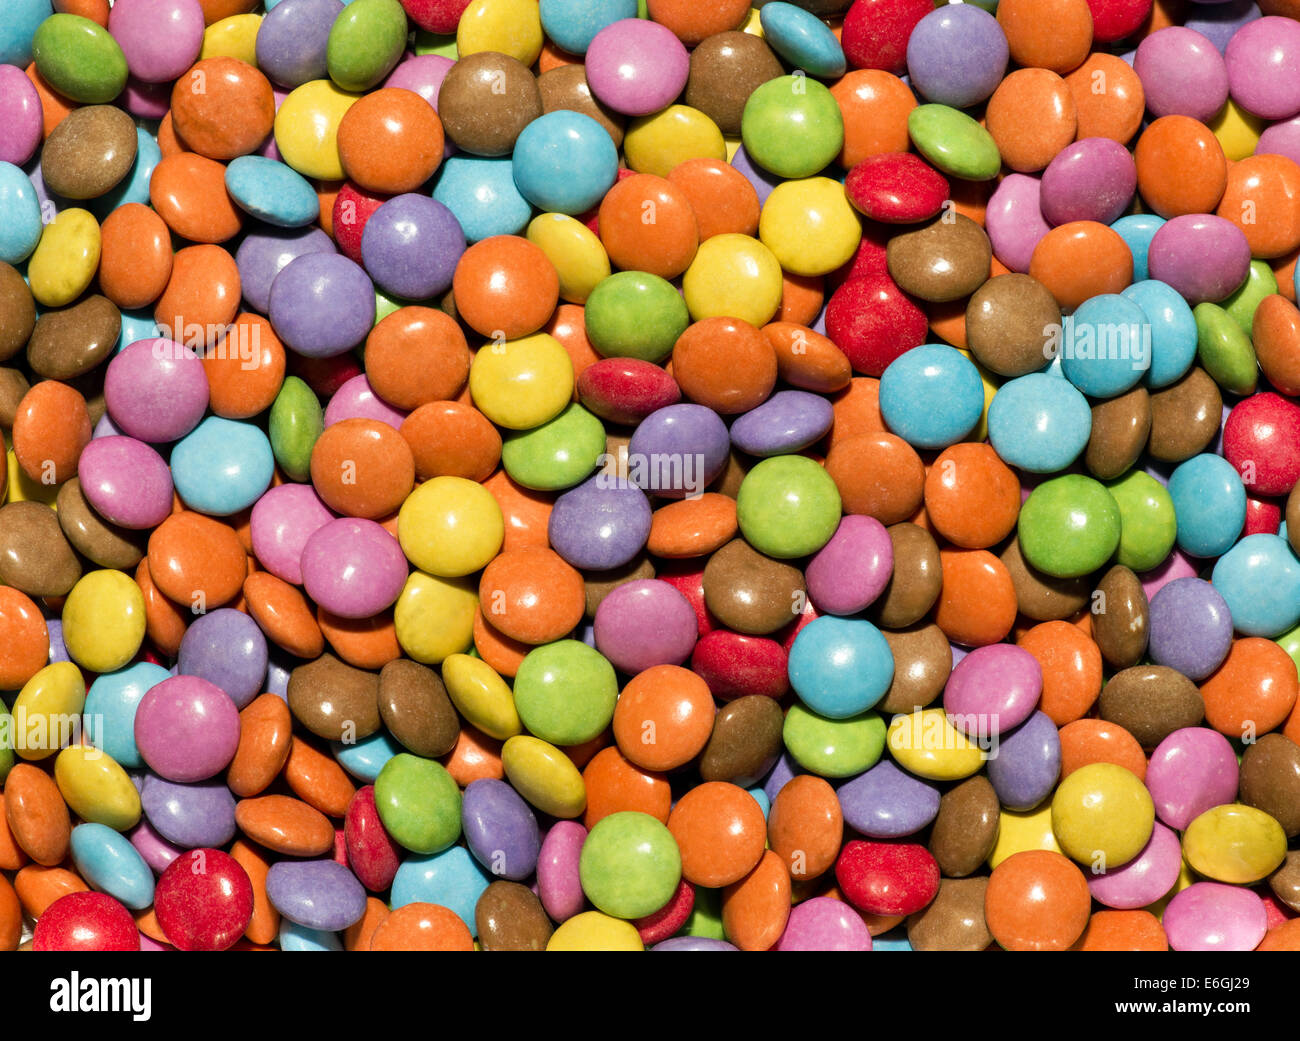 Farbige Runde Süßigkeiten Stockfoto